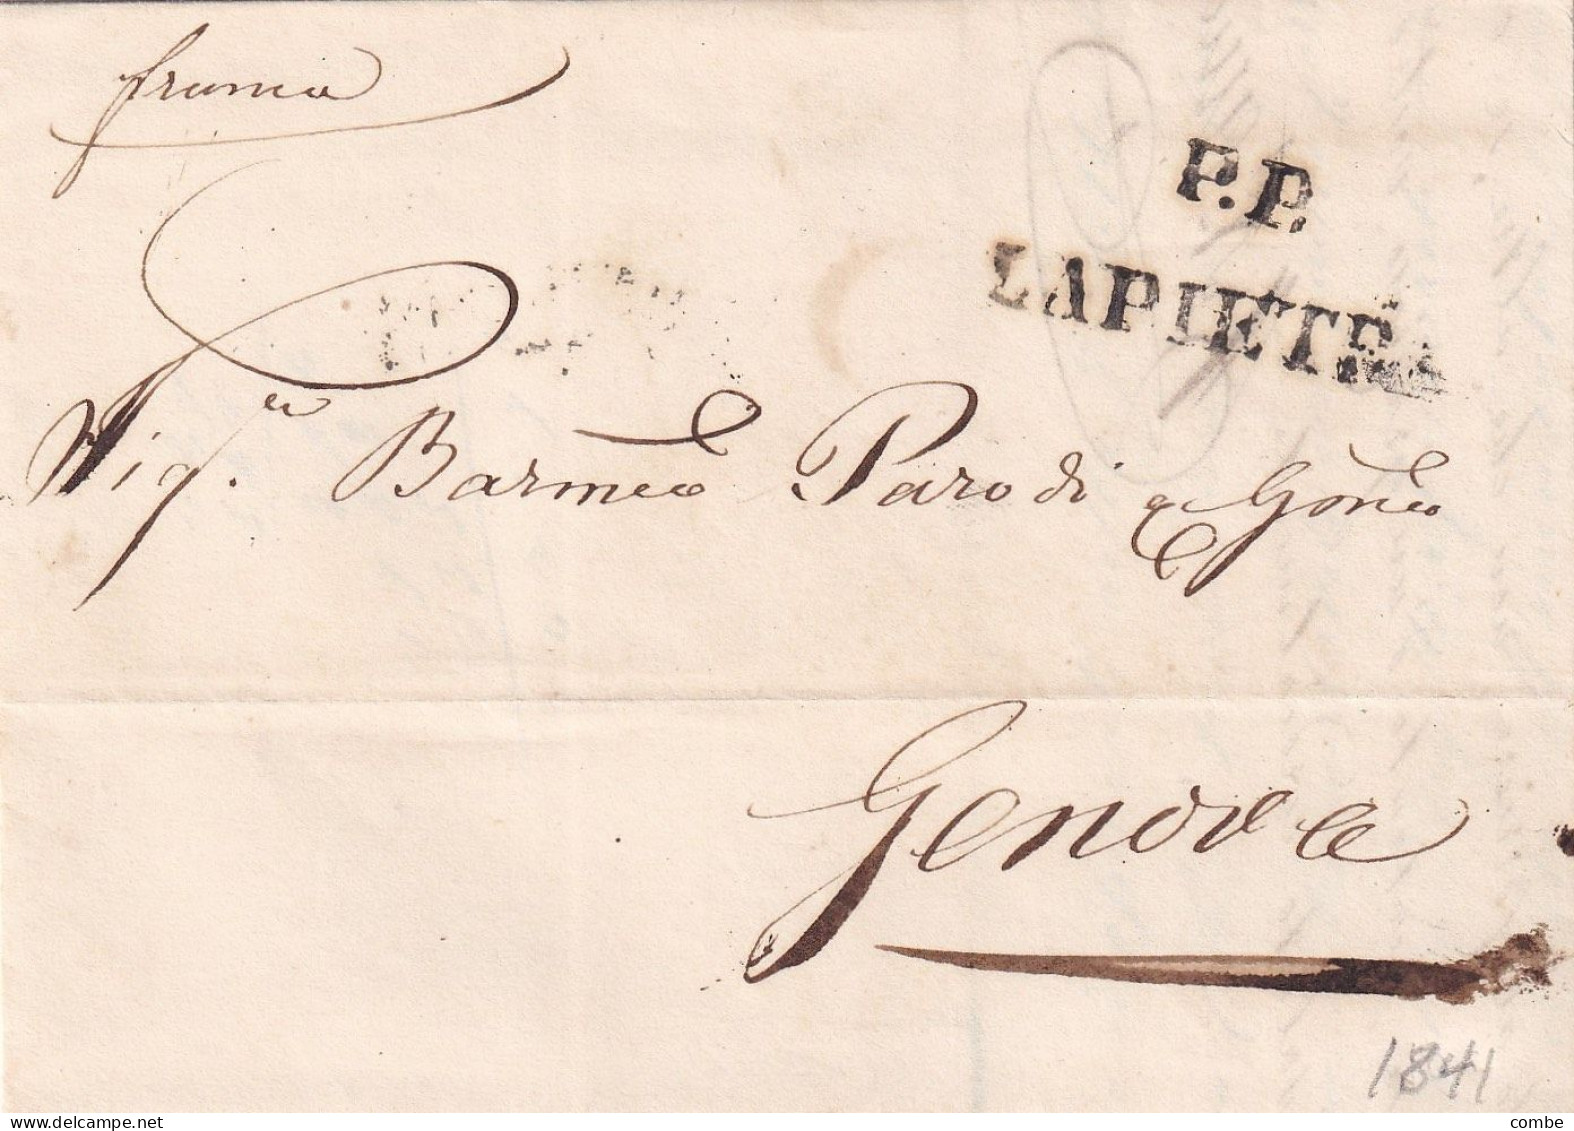 PREFILATECA COMPLETE DI TESTO. P.P. LA PIETRA. LIGURA. A GENOVA. IN DATA. 29 11 1841 - ...-1850 Voorfilatelie